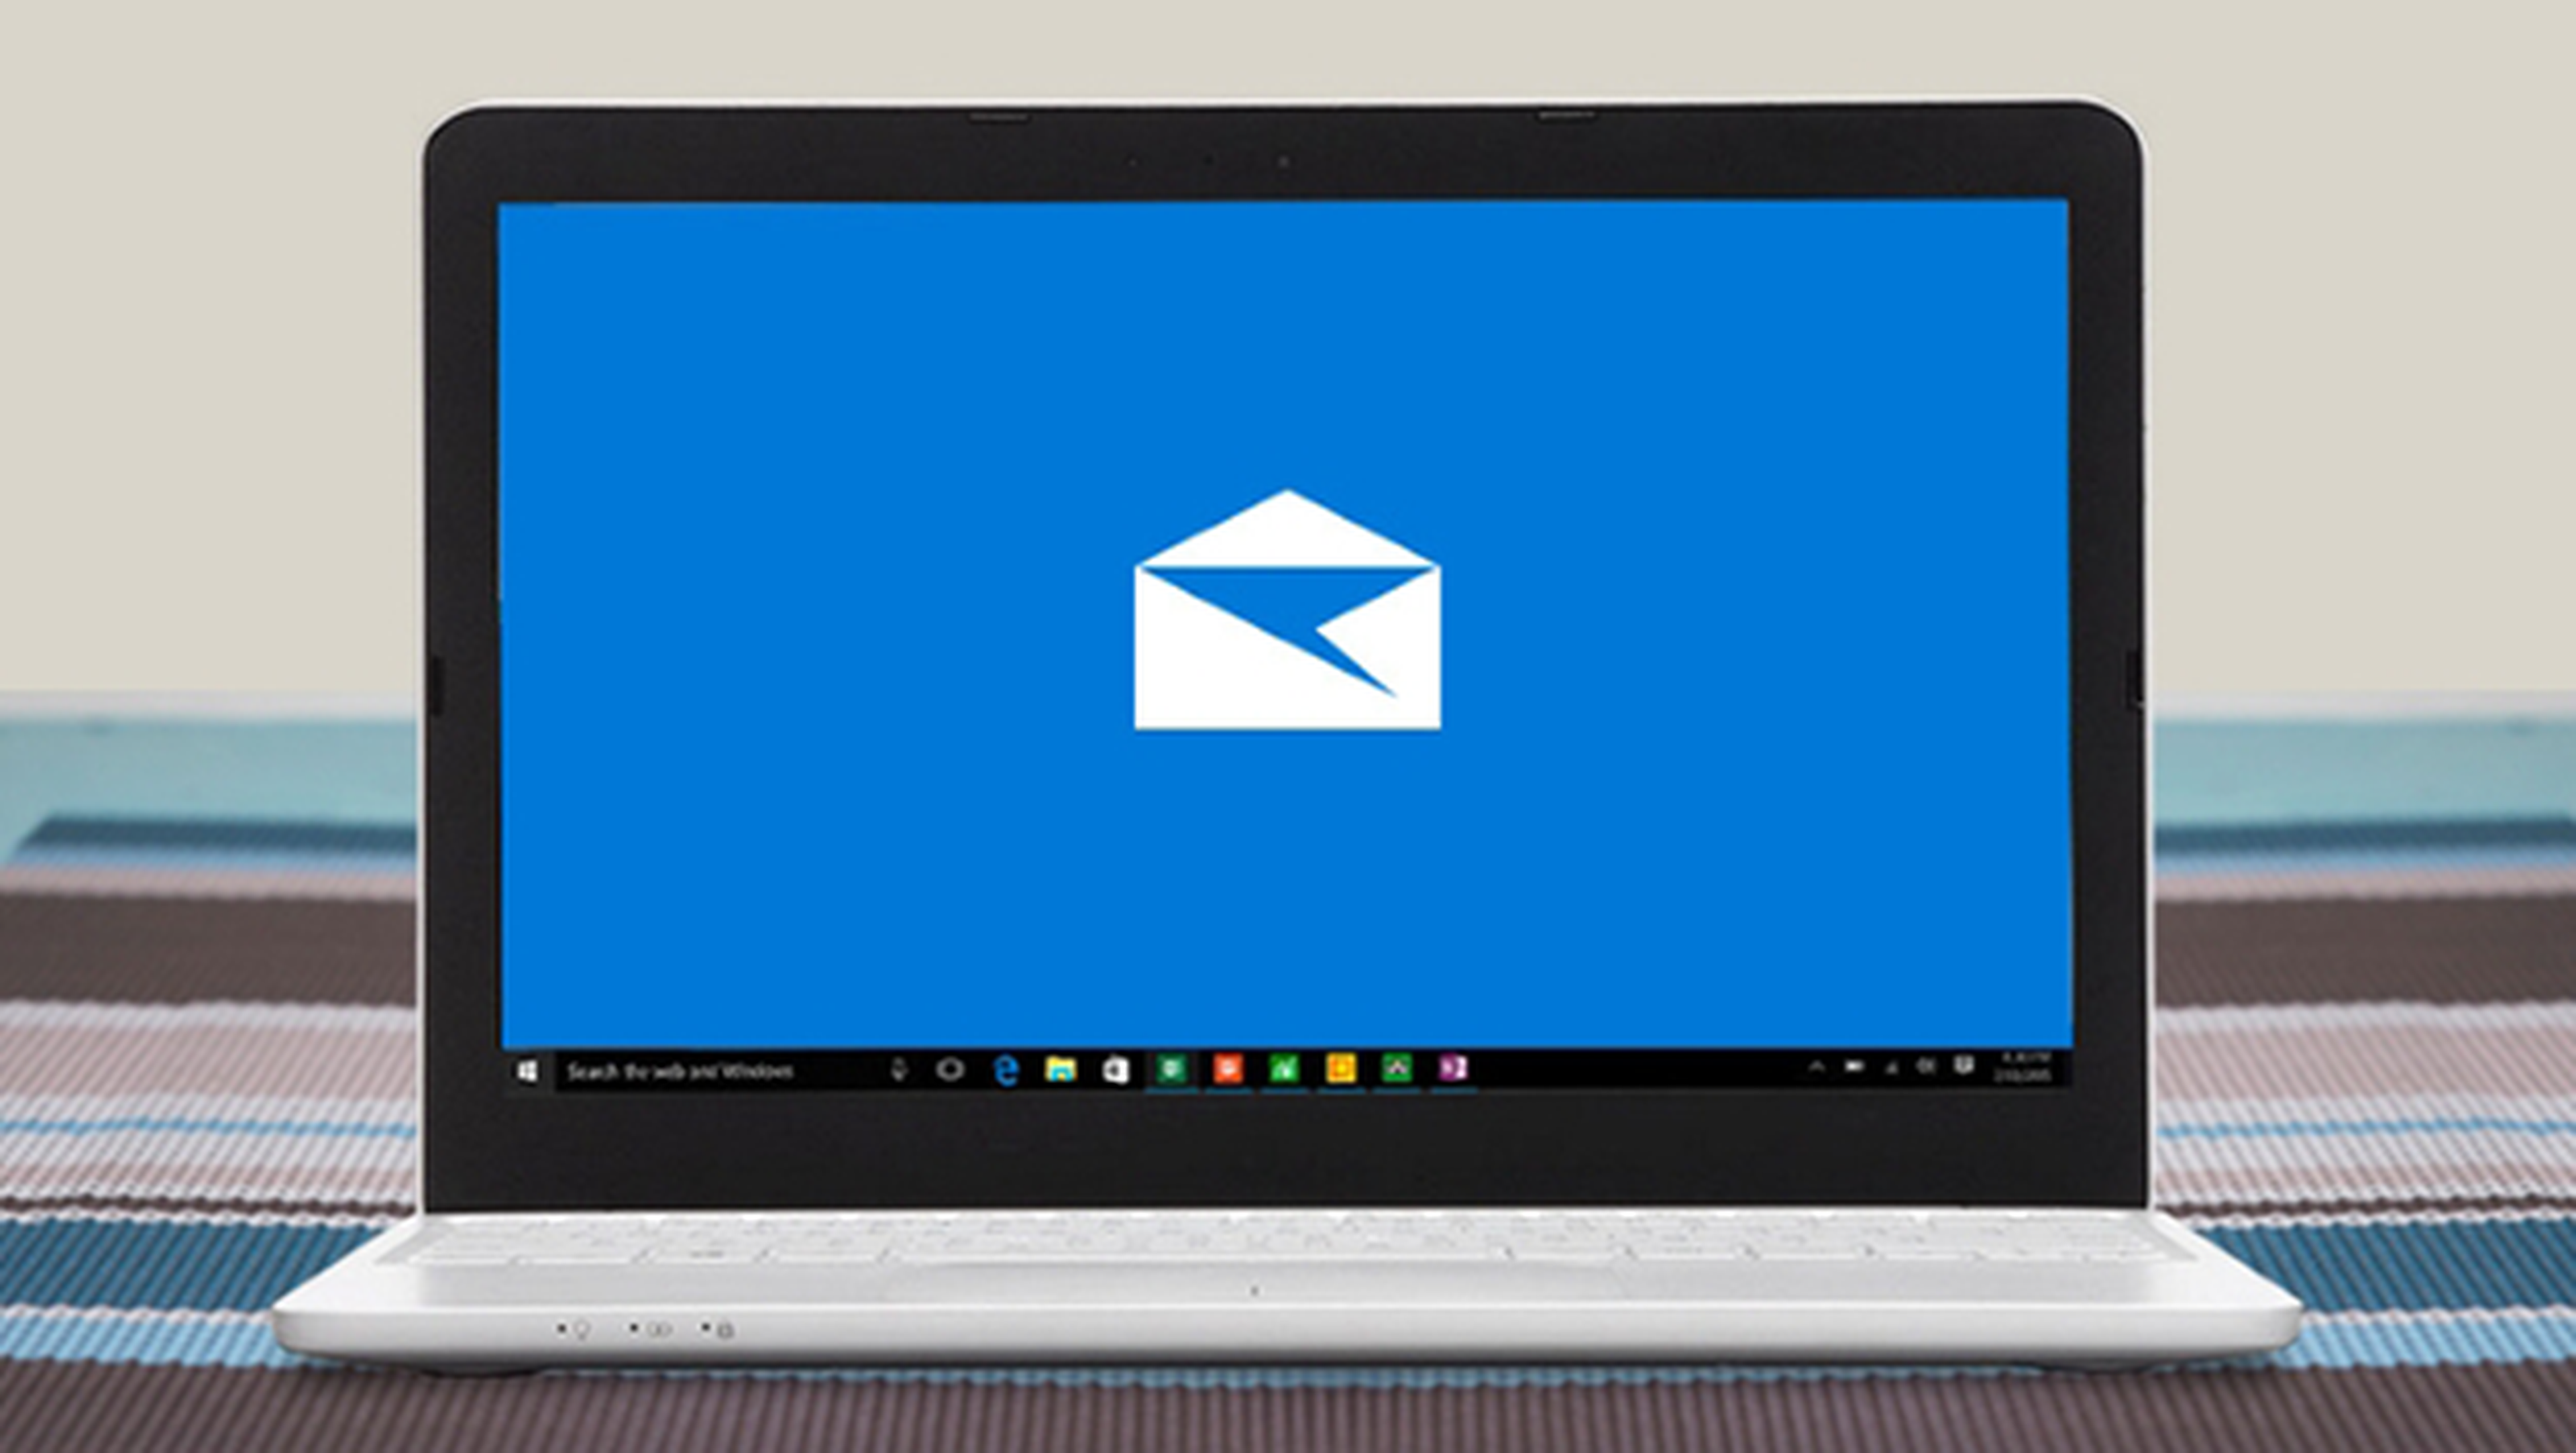 Primeros pasos con la aplicación de correo de Windows 10